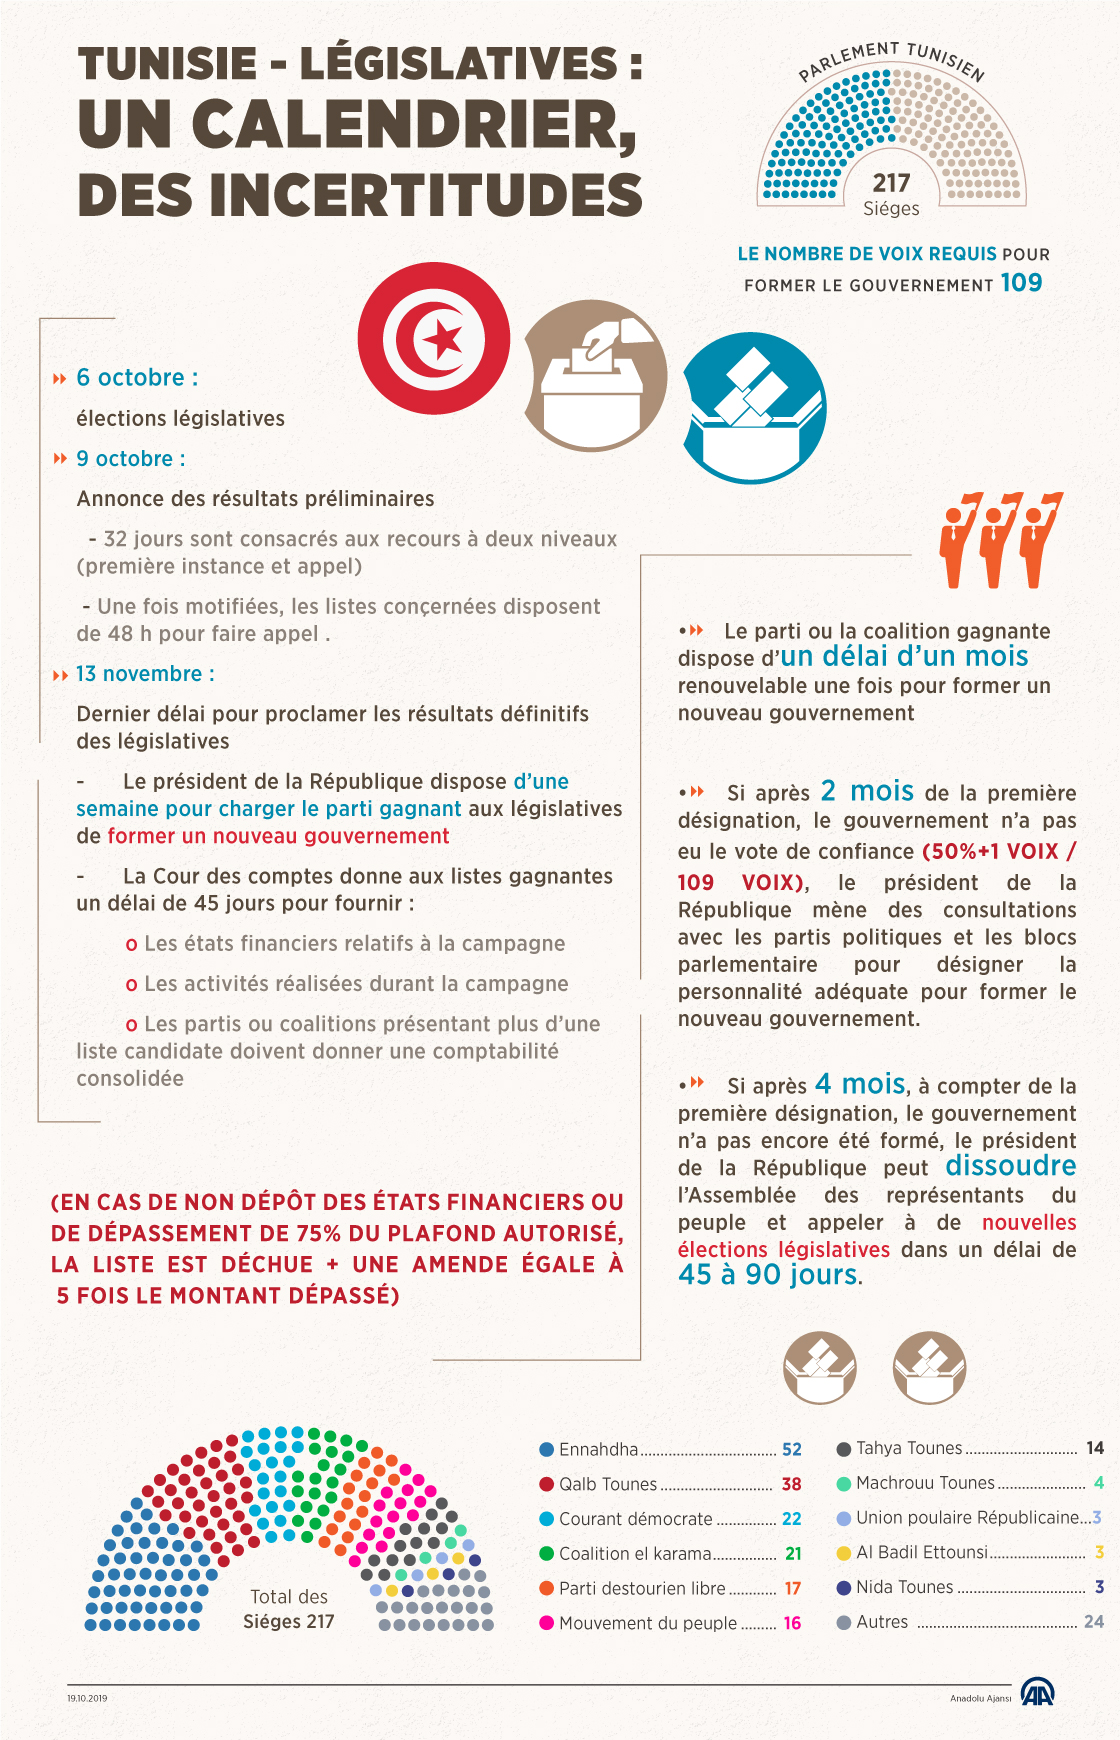 Tunisie / Législatives : un calendrier, des incertitudes (Infographie)